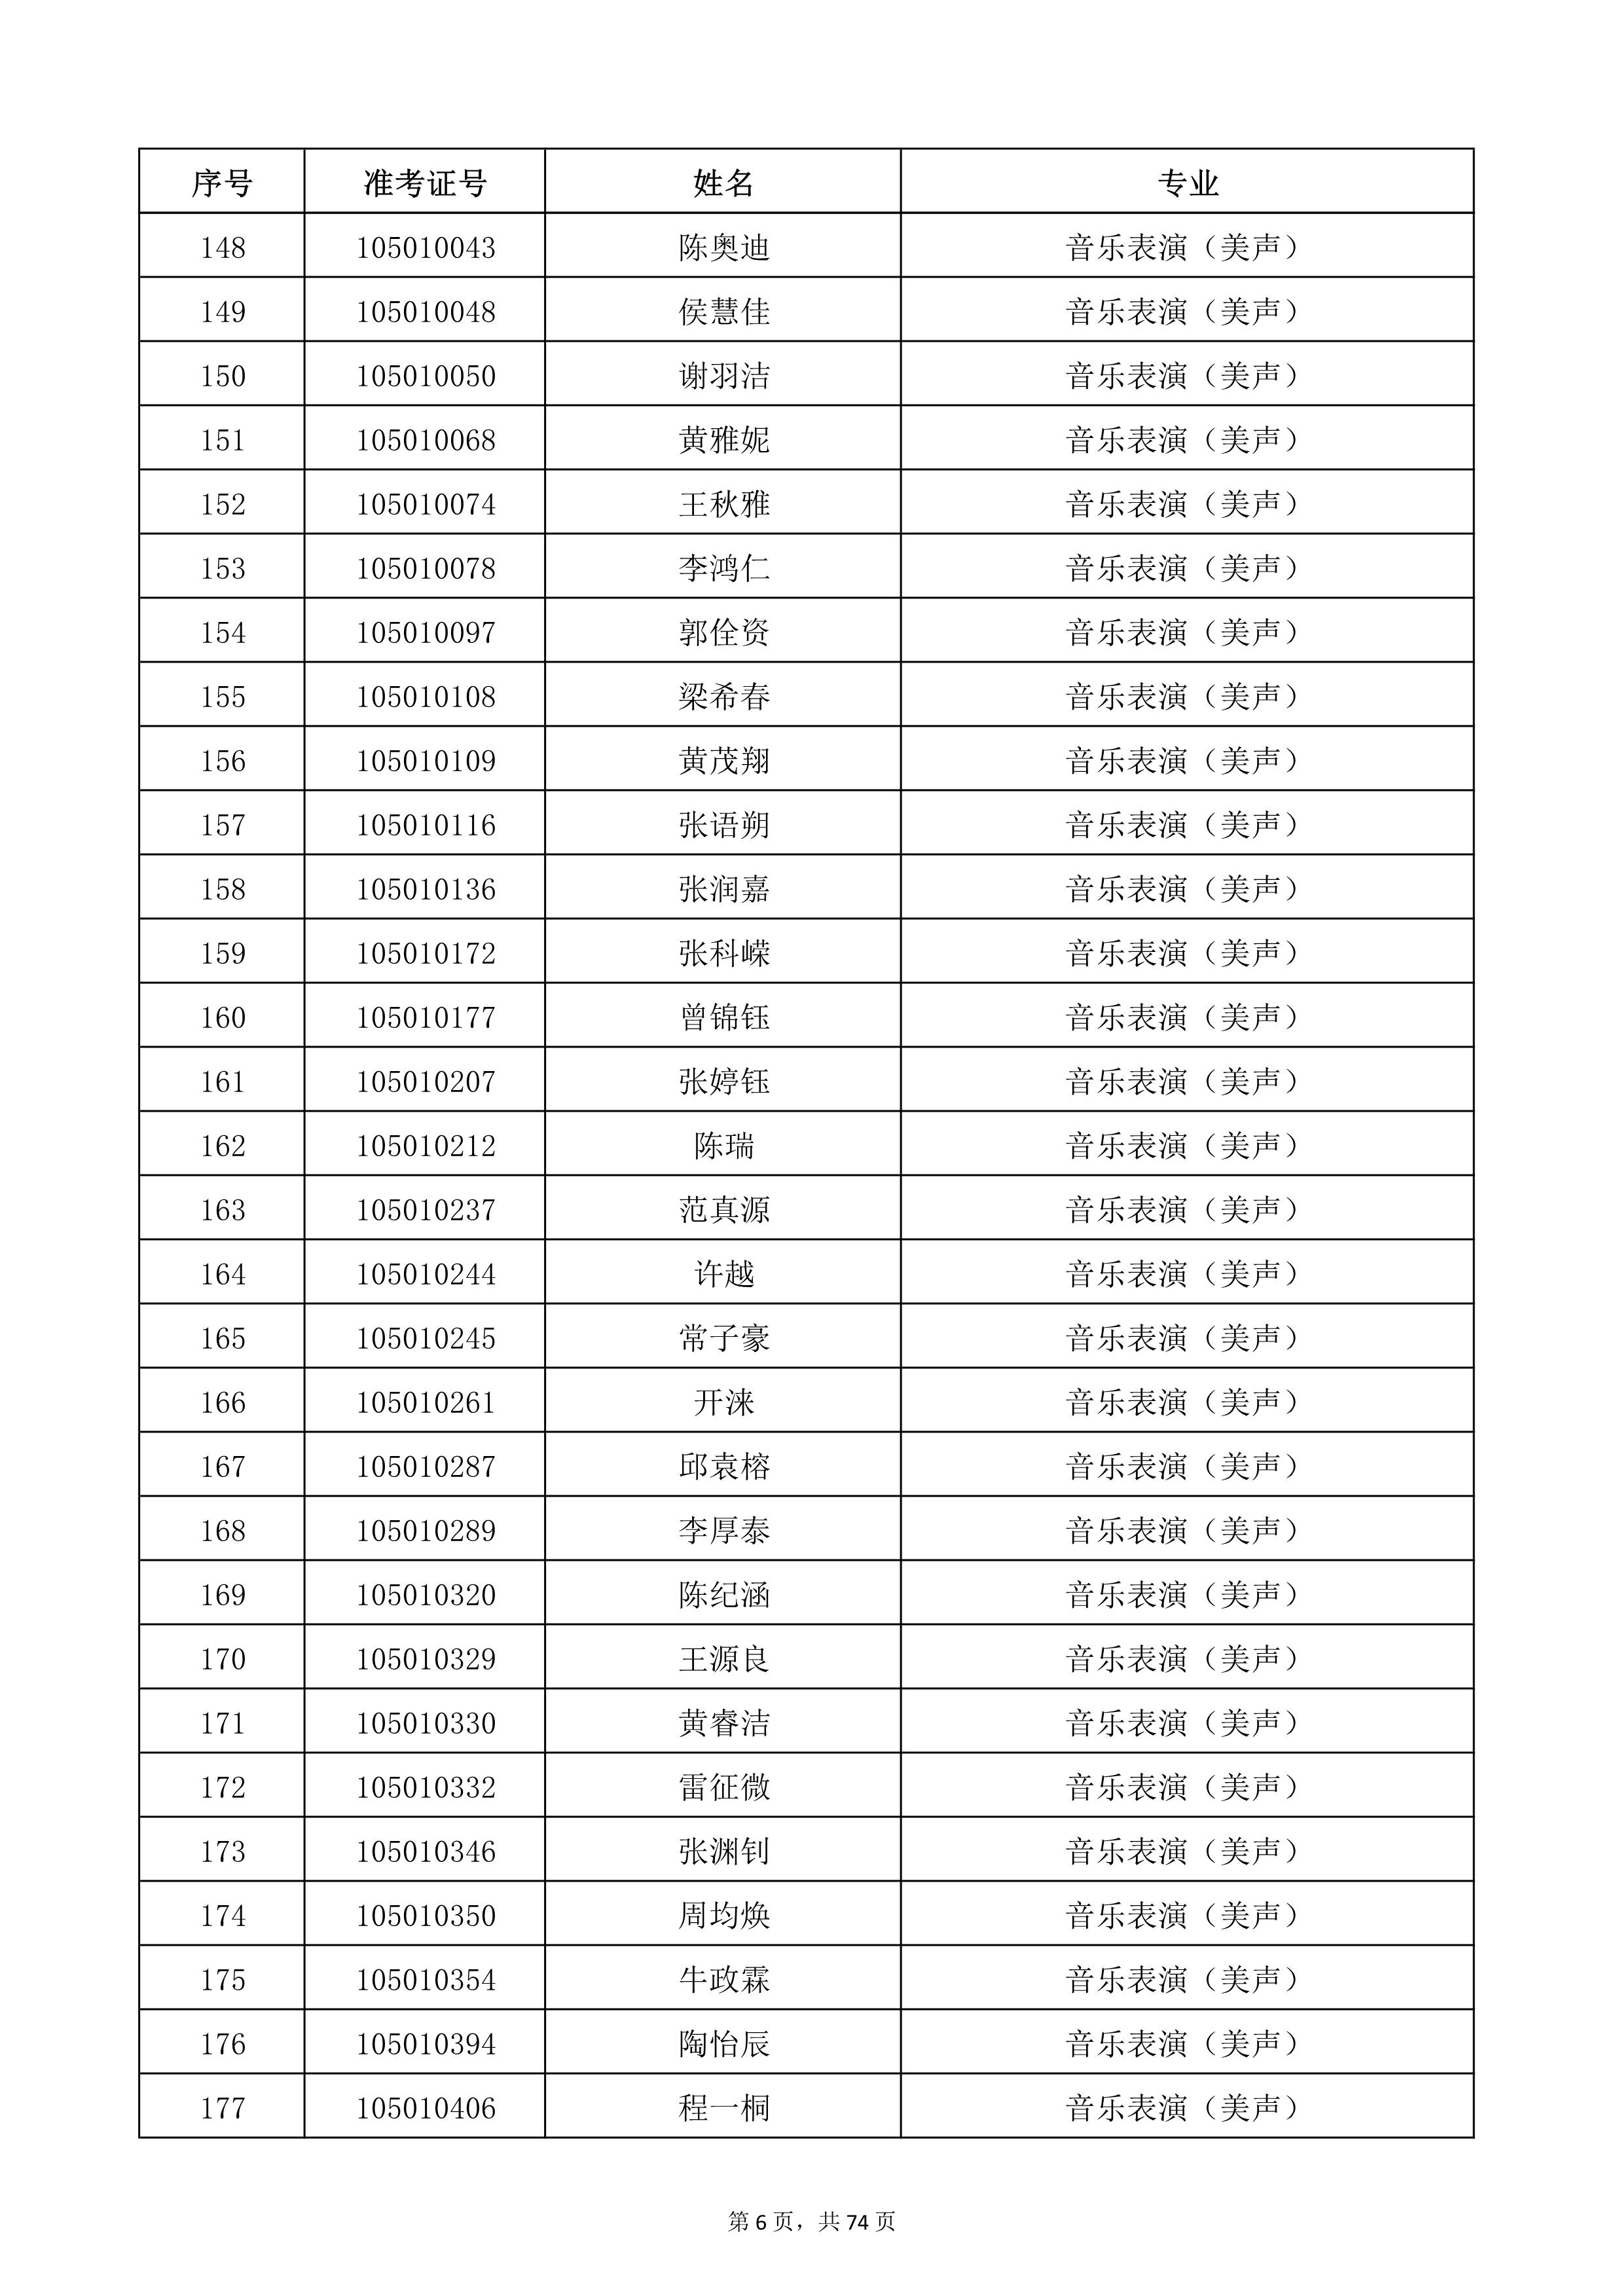 天津音乐学院2022年本科招生考试复试名单_6.jpg